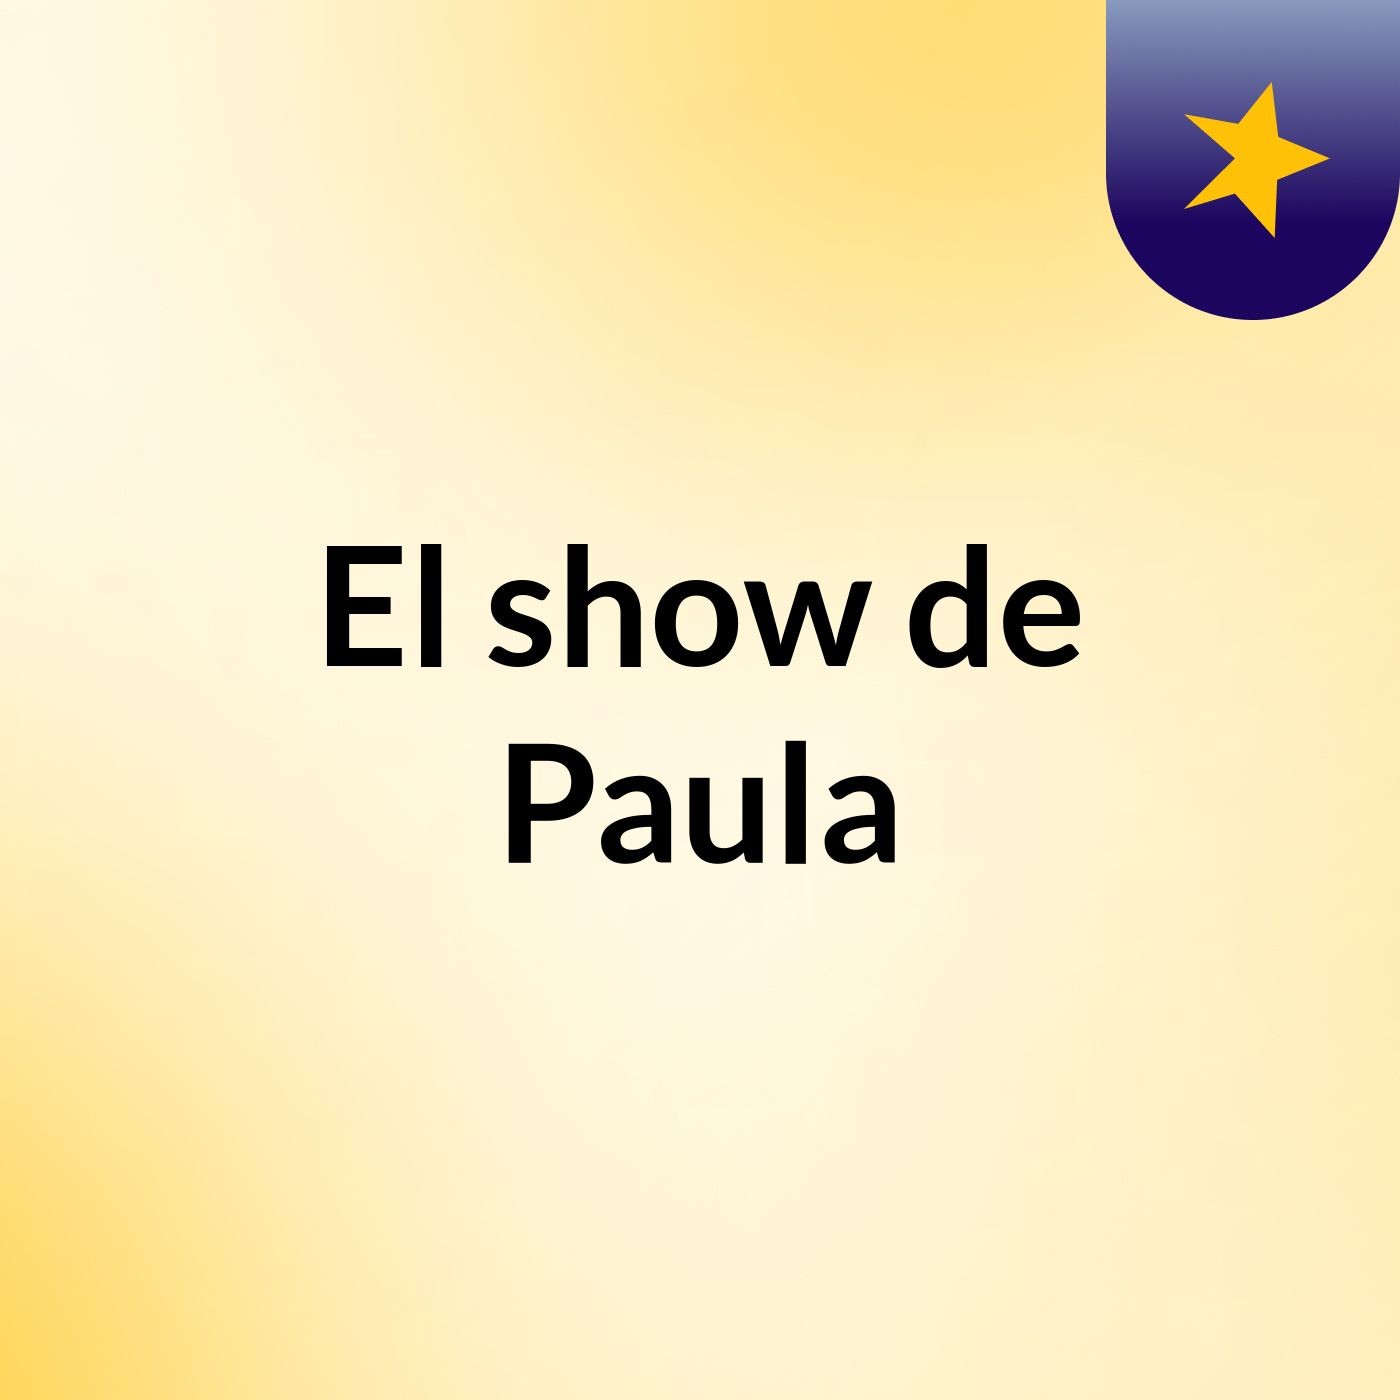 El show de Paula